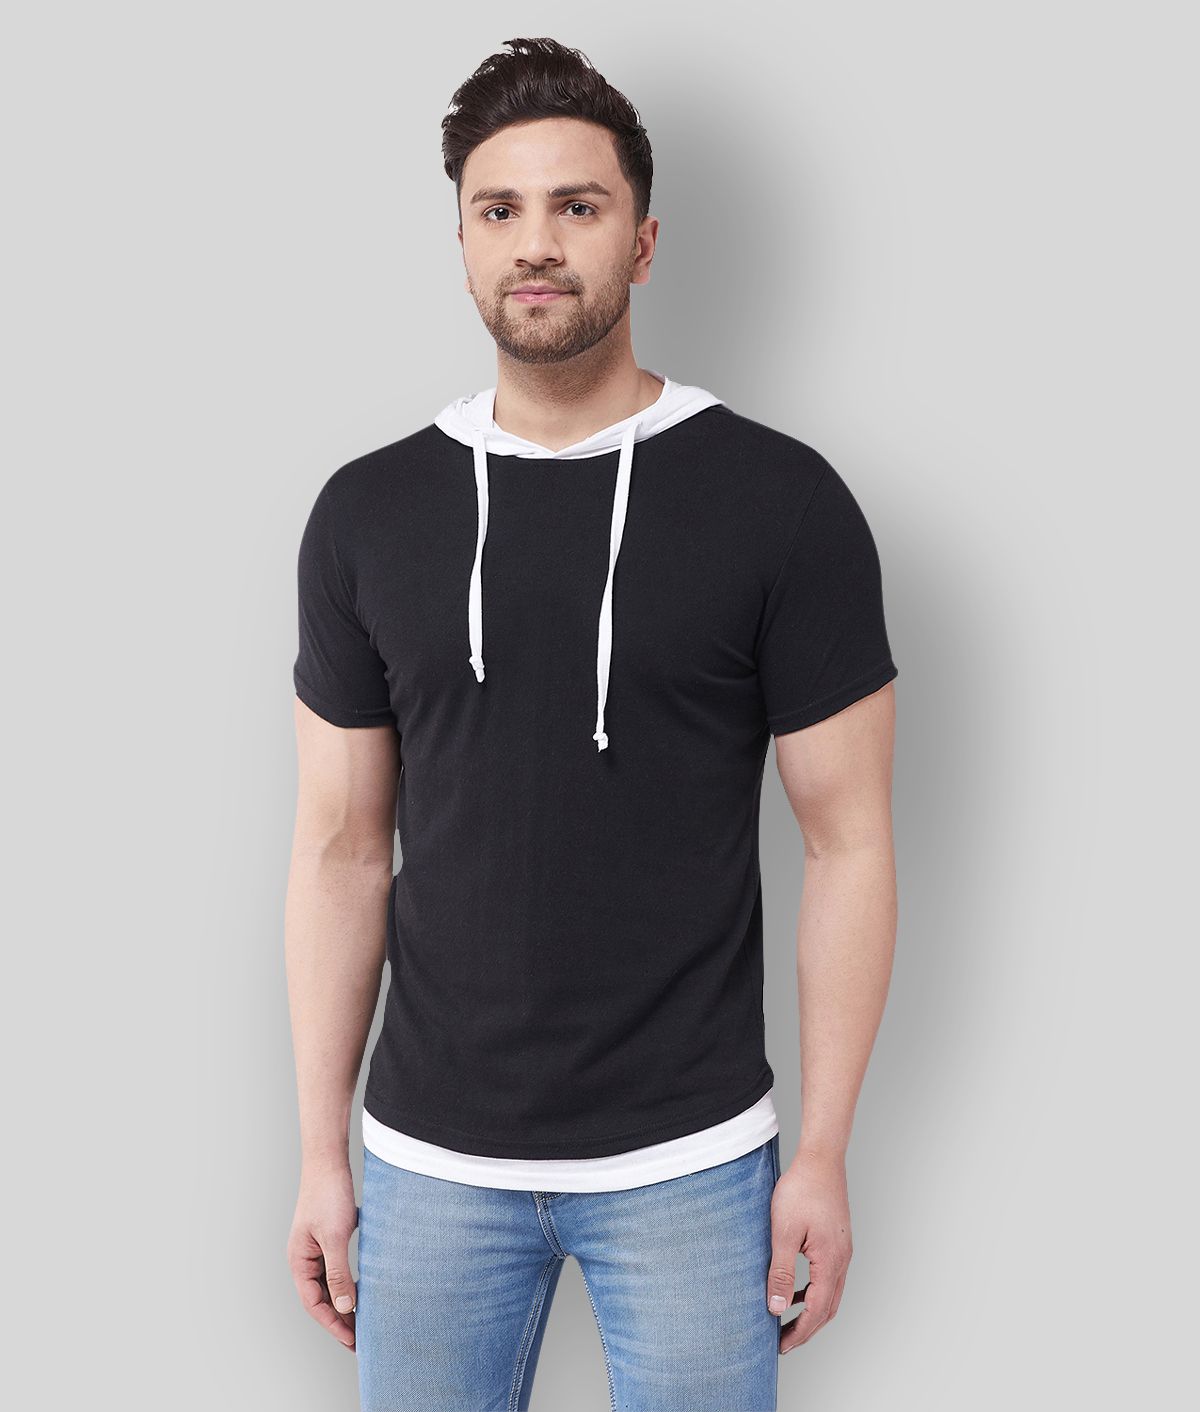 Gritstones - Black Cotton Blend Regular Fit Men's T-Shirt ( Pack of 1 )